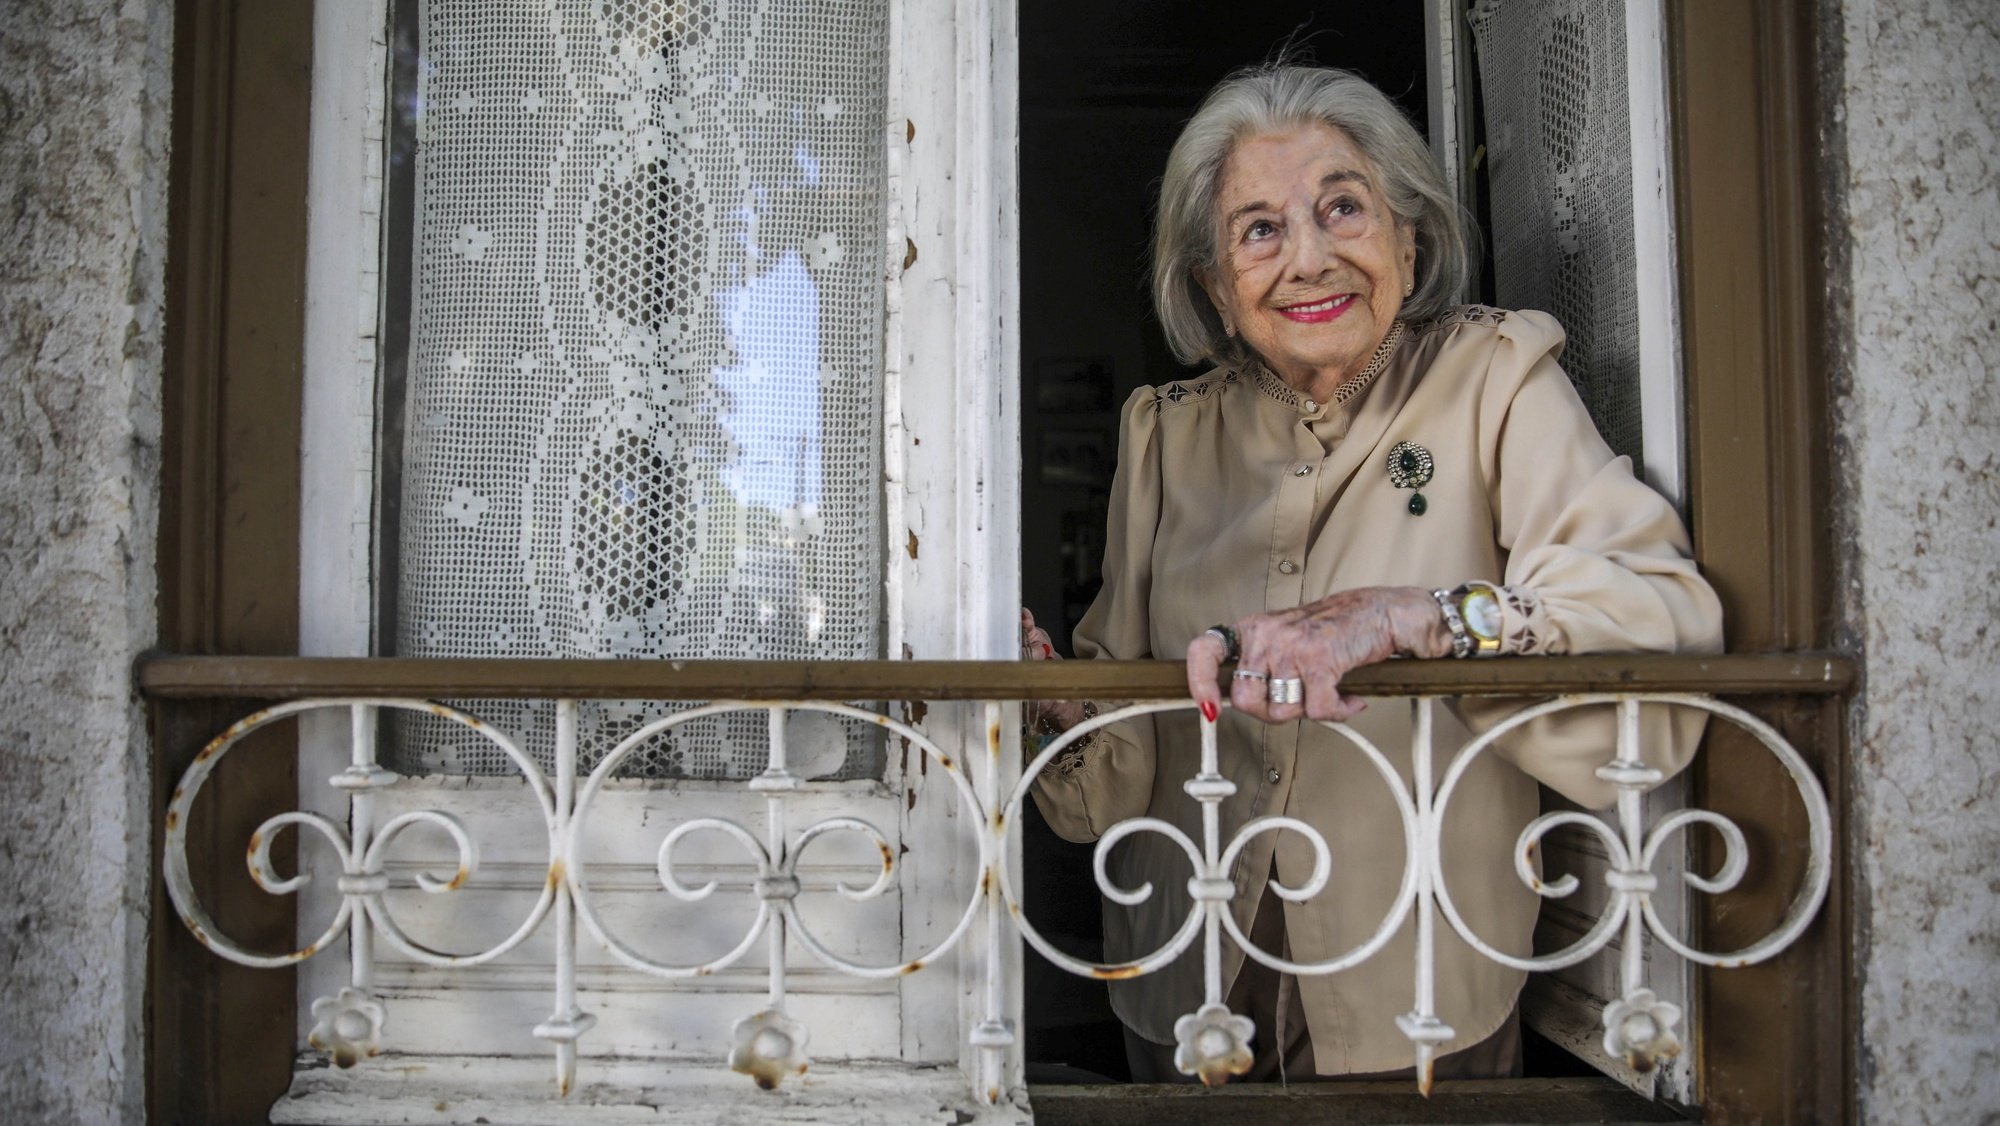 A atriz Eunice Muñoz, de 93 anos, fotografada na sua casa em Oeiras, 21 de setembro de 2021. “A margem do tempo”, peça com que Eunice Muñoz decidiu terminar uma carreira prestes a atingir 80 anos, ao lado da neta Lídia Muñoz, vai continuar em digressão em 2022. (ACOMPANHA TEXTO DO DIA 29 SETEMBRO 2021). ANDRÉ KOSTERS / LUSA